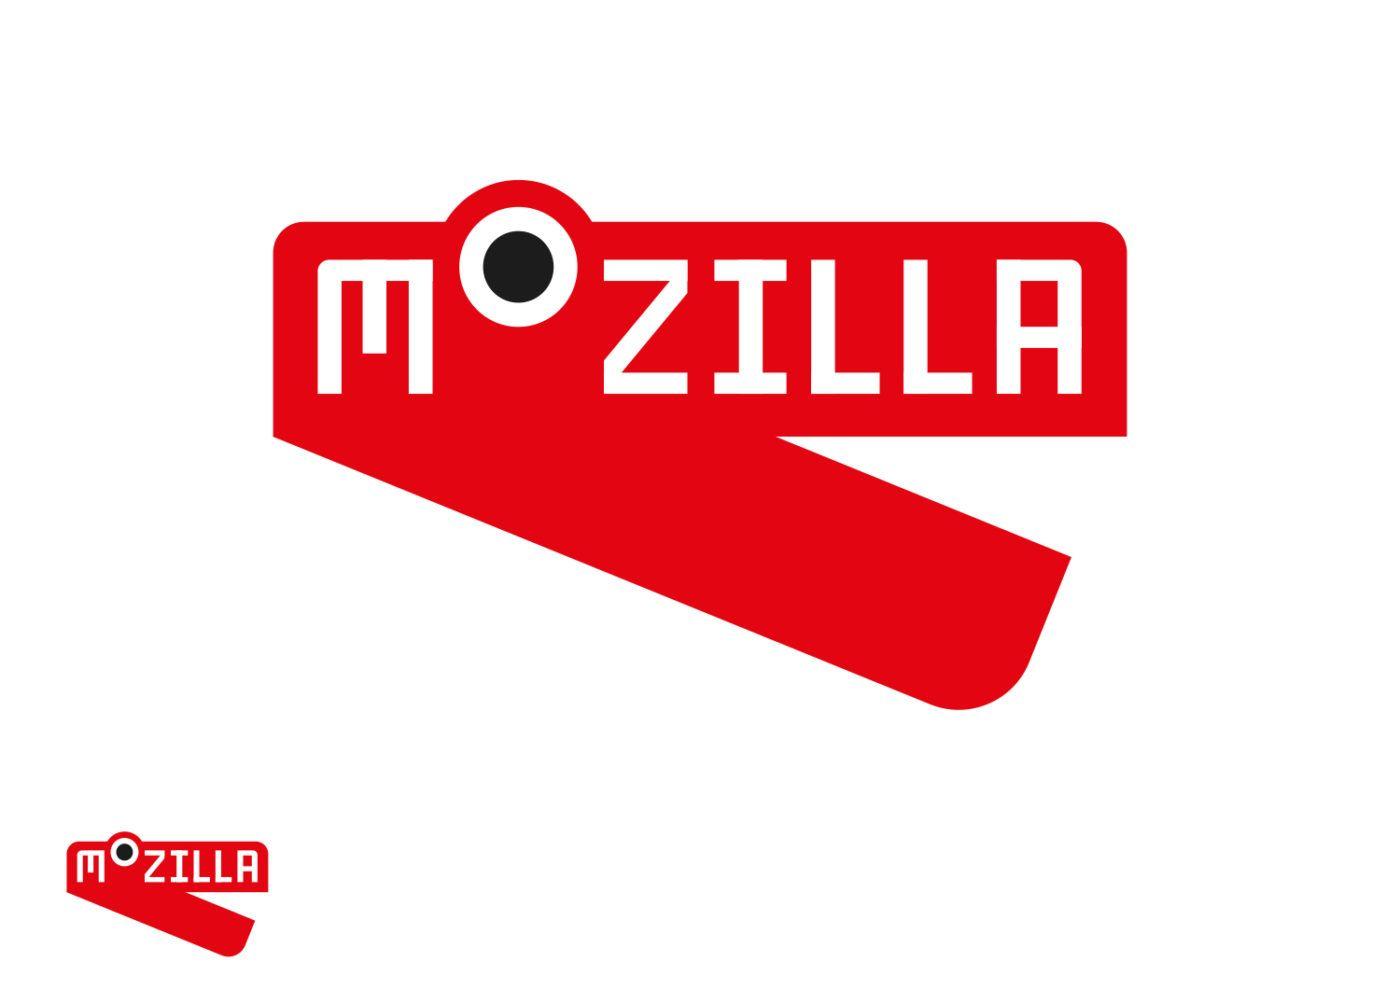 New Mozilla Logo - Mozilla's new logo hopes to show it's at “the heart of the internet